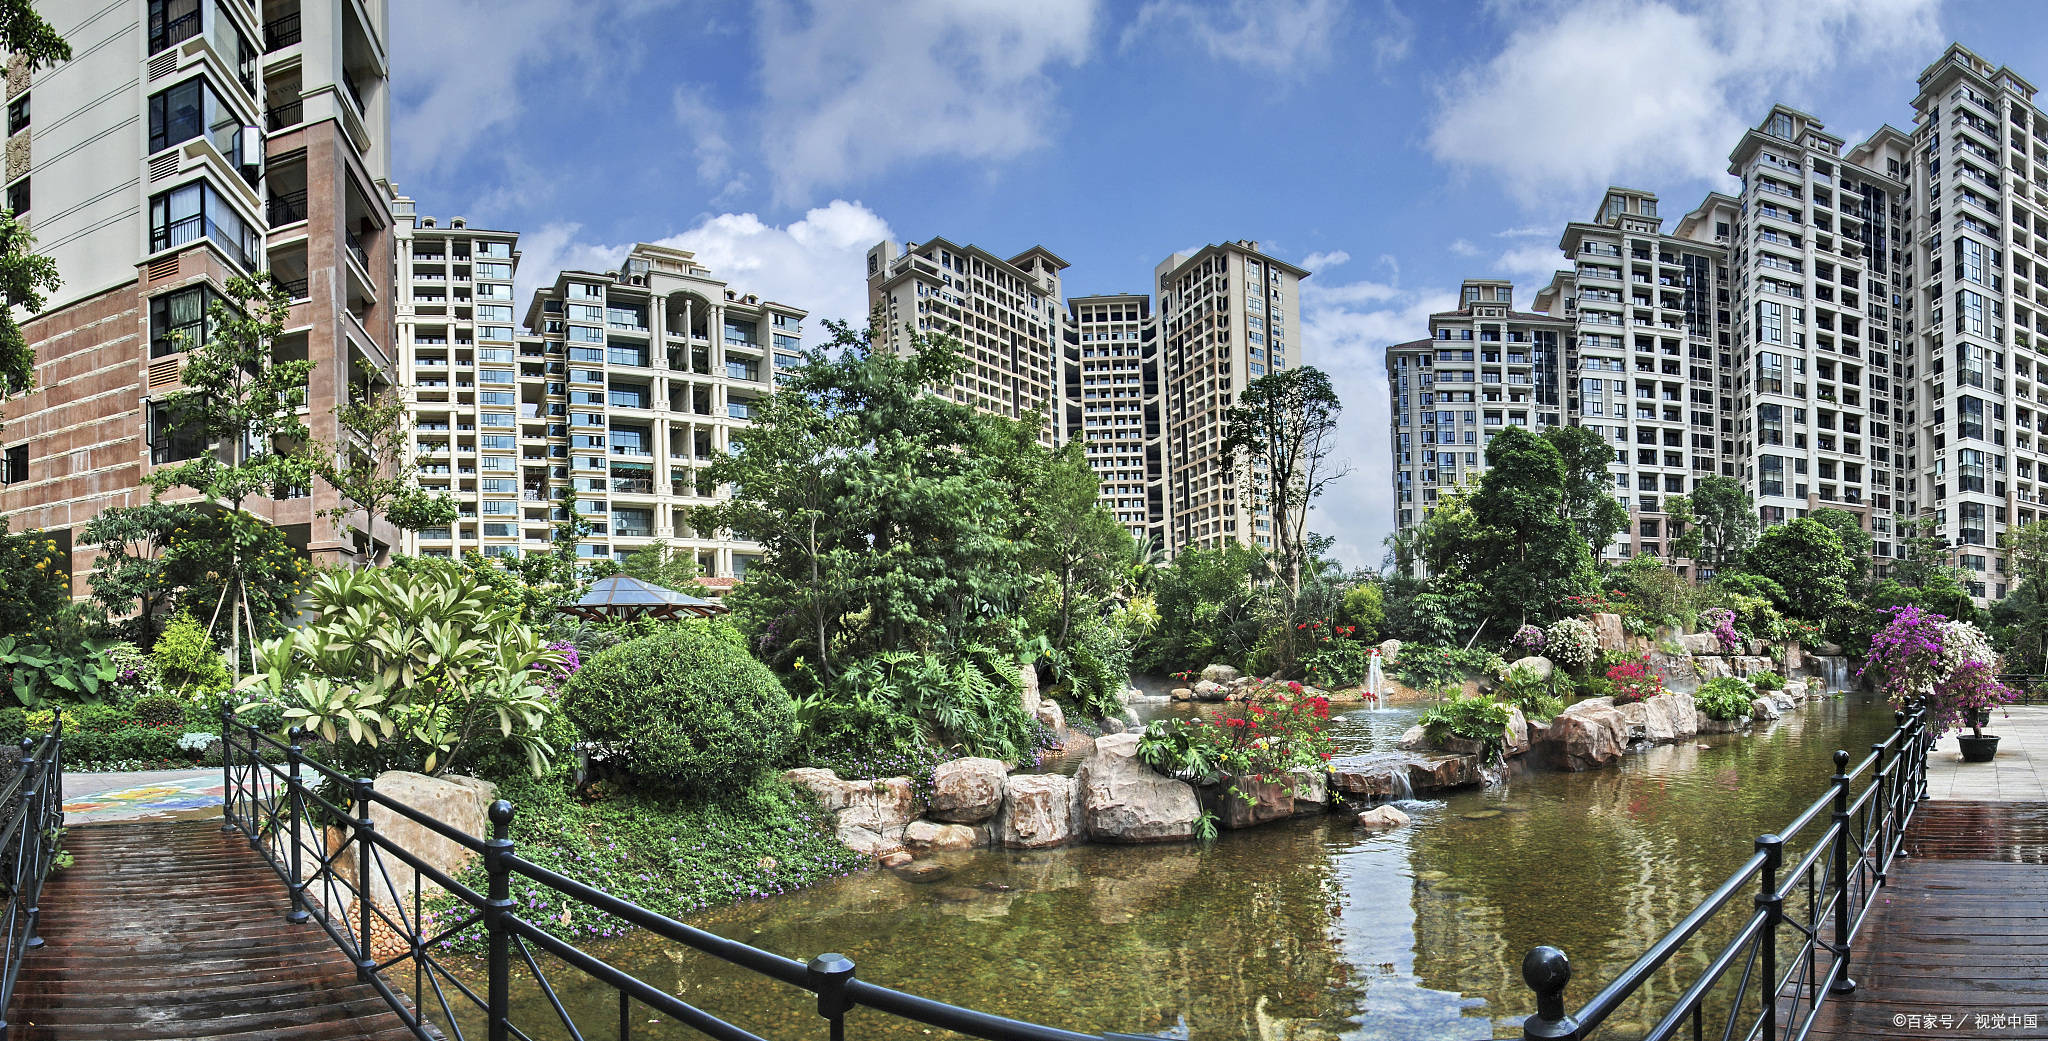 总之,惠州雅居乐花园楼盘项目是一个集自然,人文,科技于一体的综合性